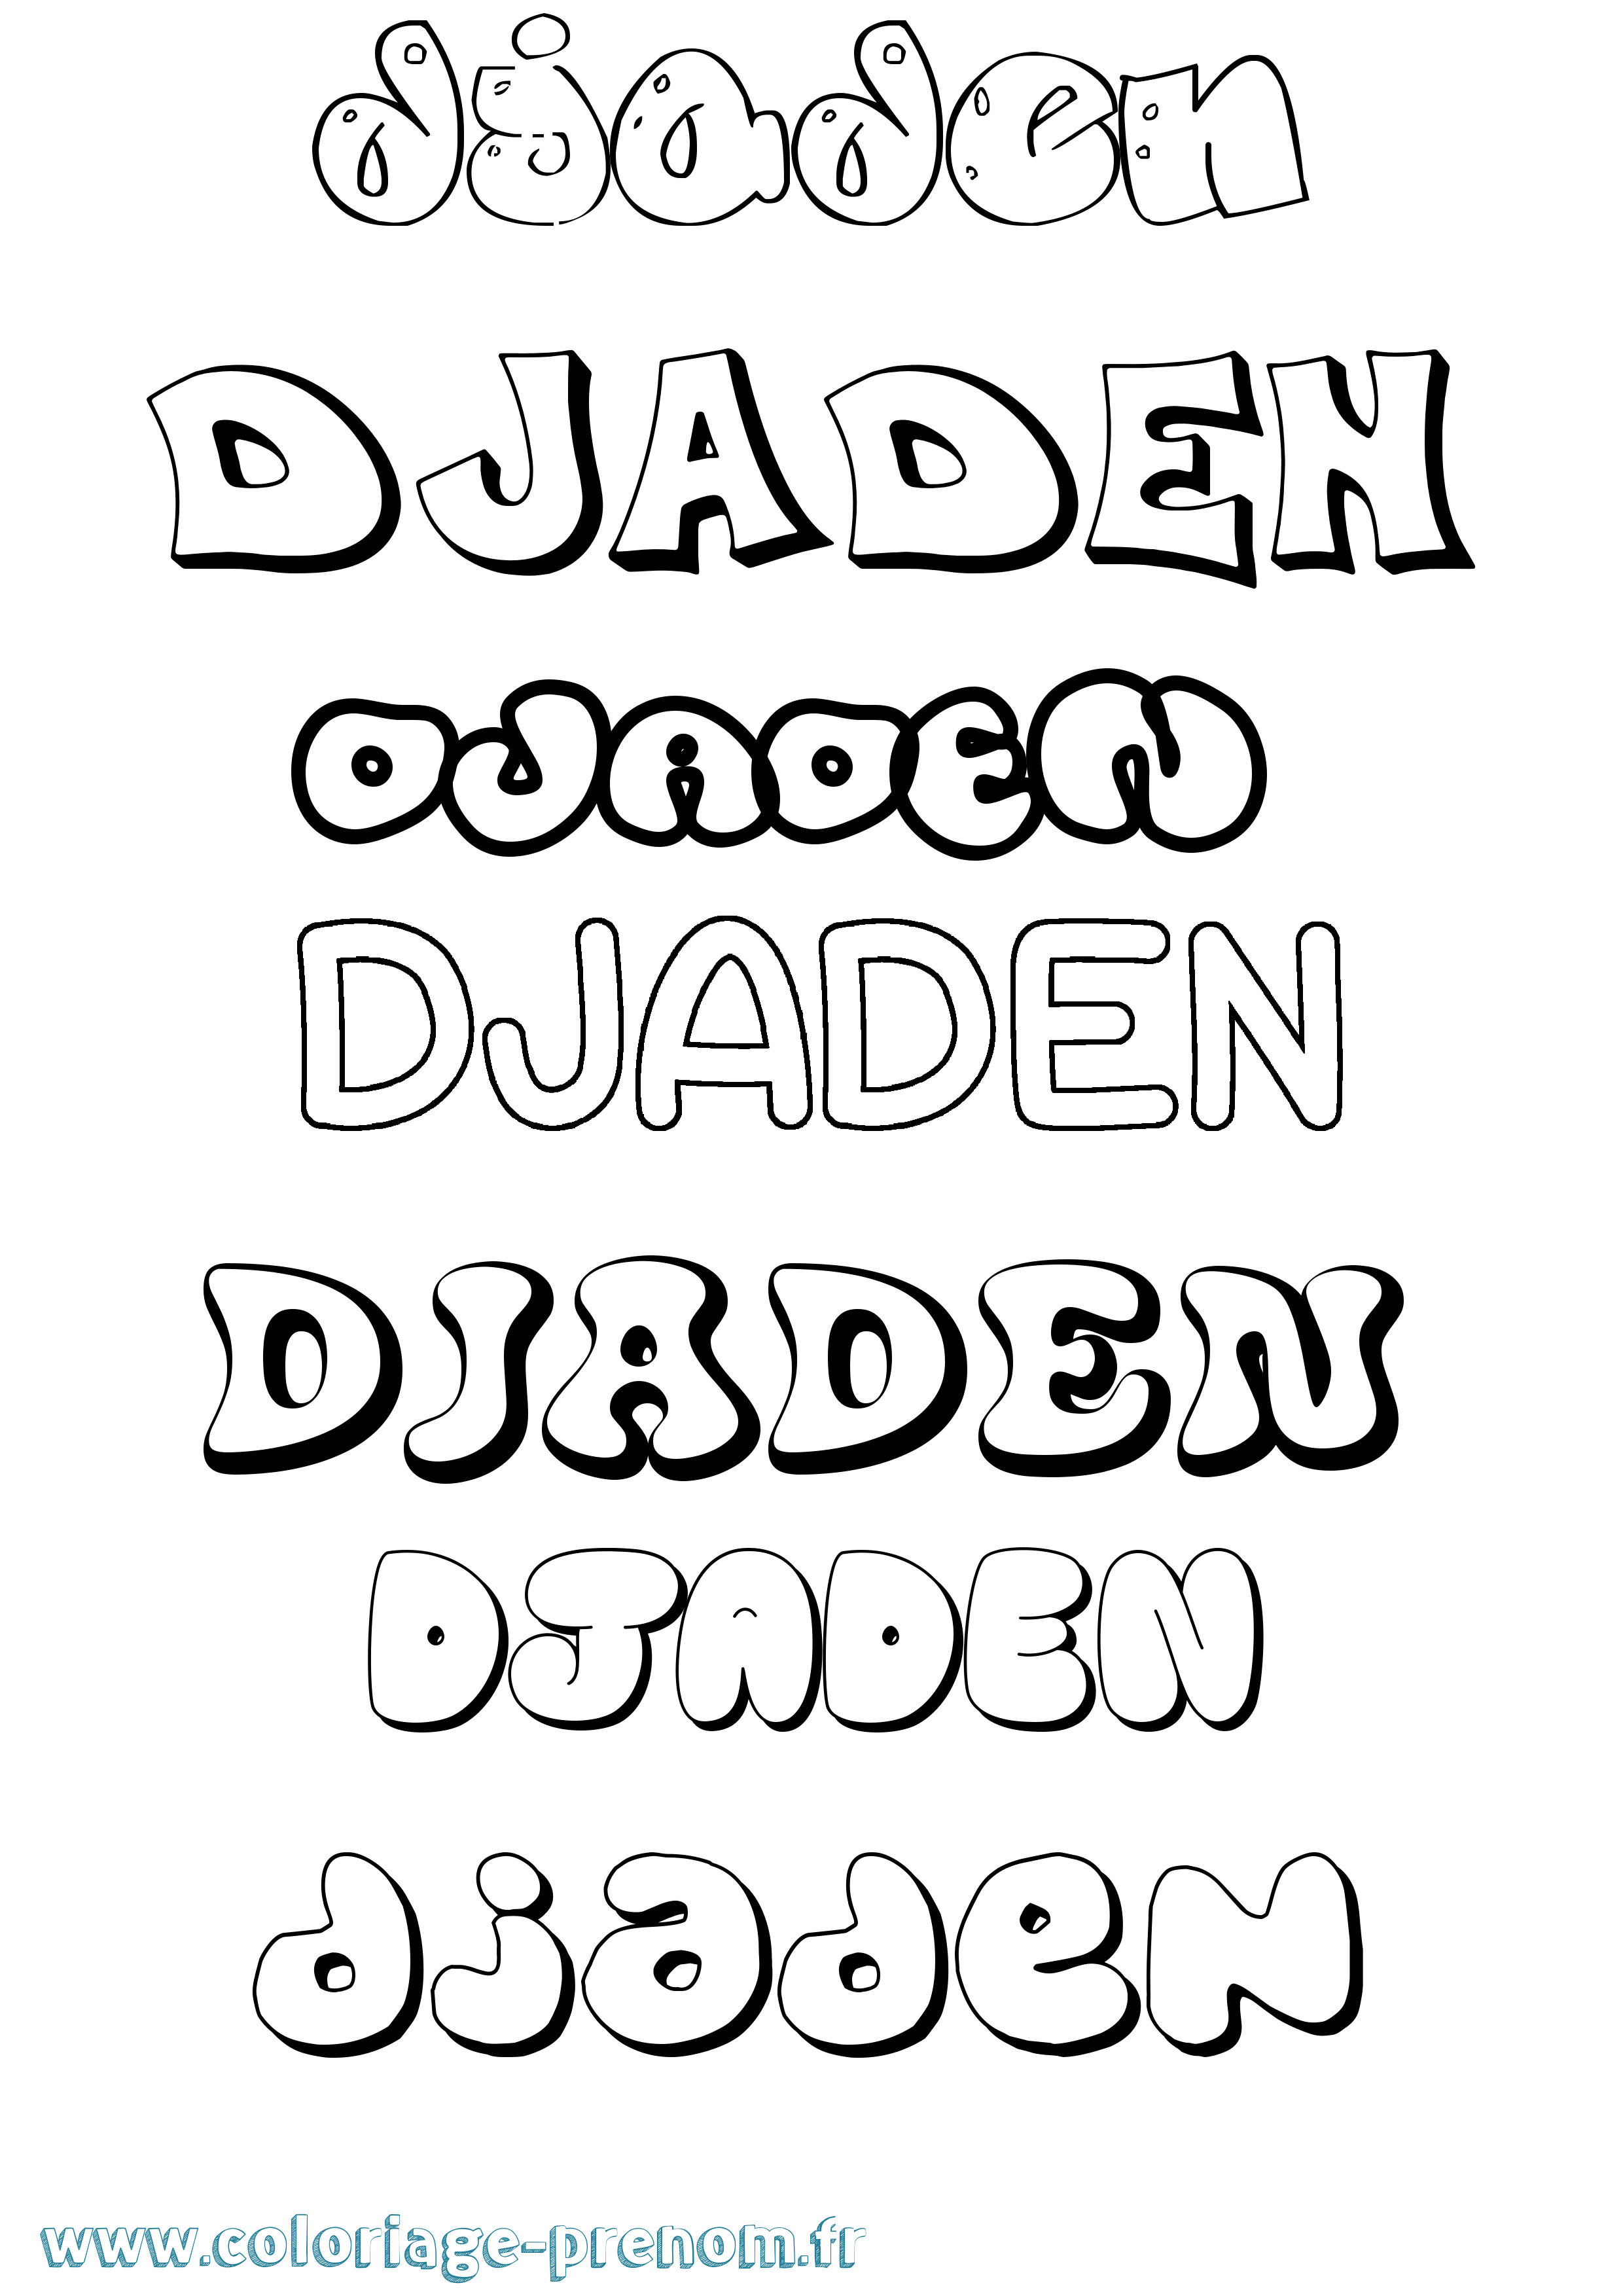 Coloriage prénom Djaden Bubble